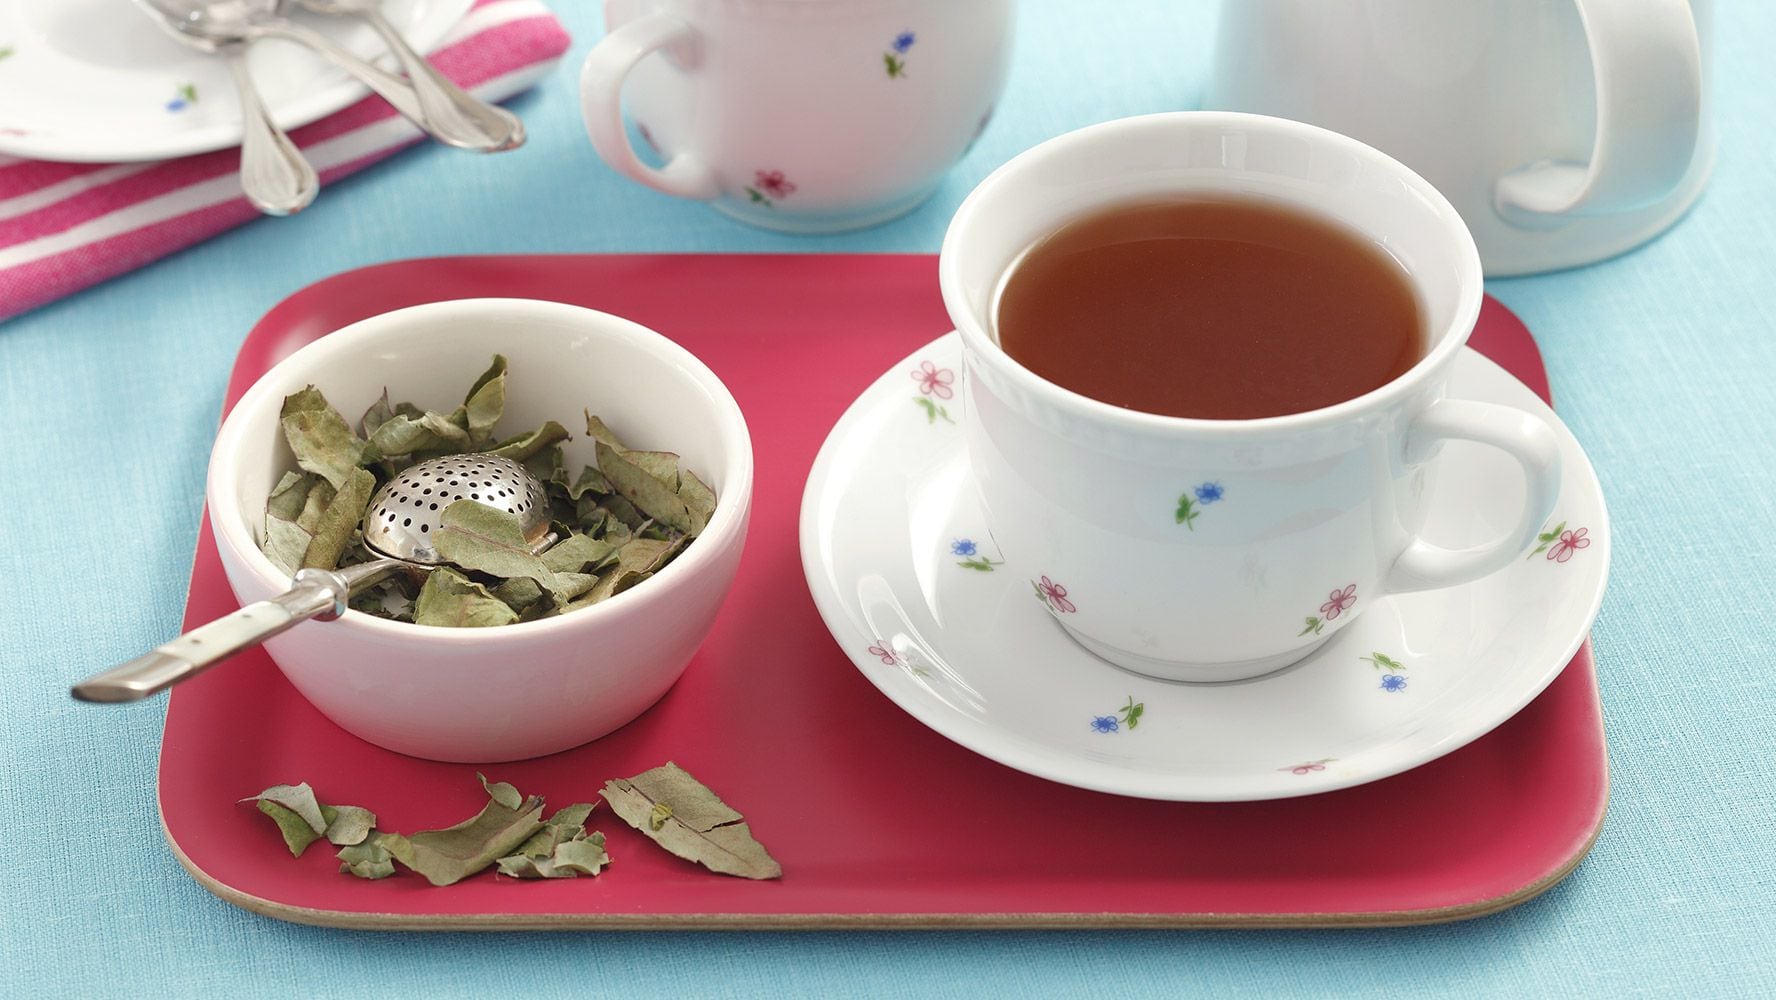 El té de eucalipto puede aportar diversos beneficios a la salud. (Foto: Shutterstock)